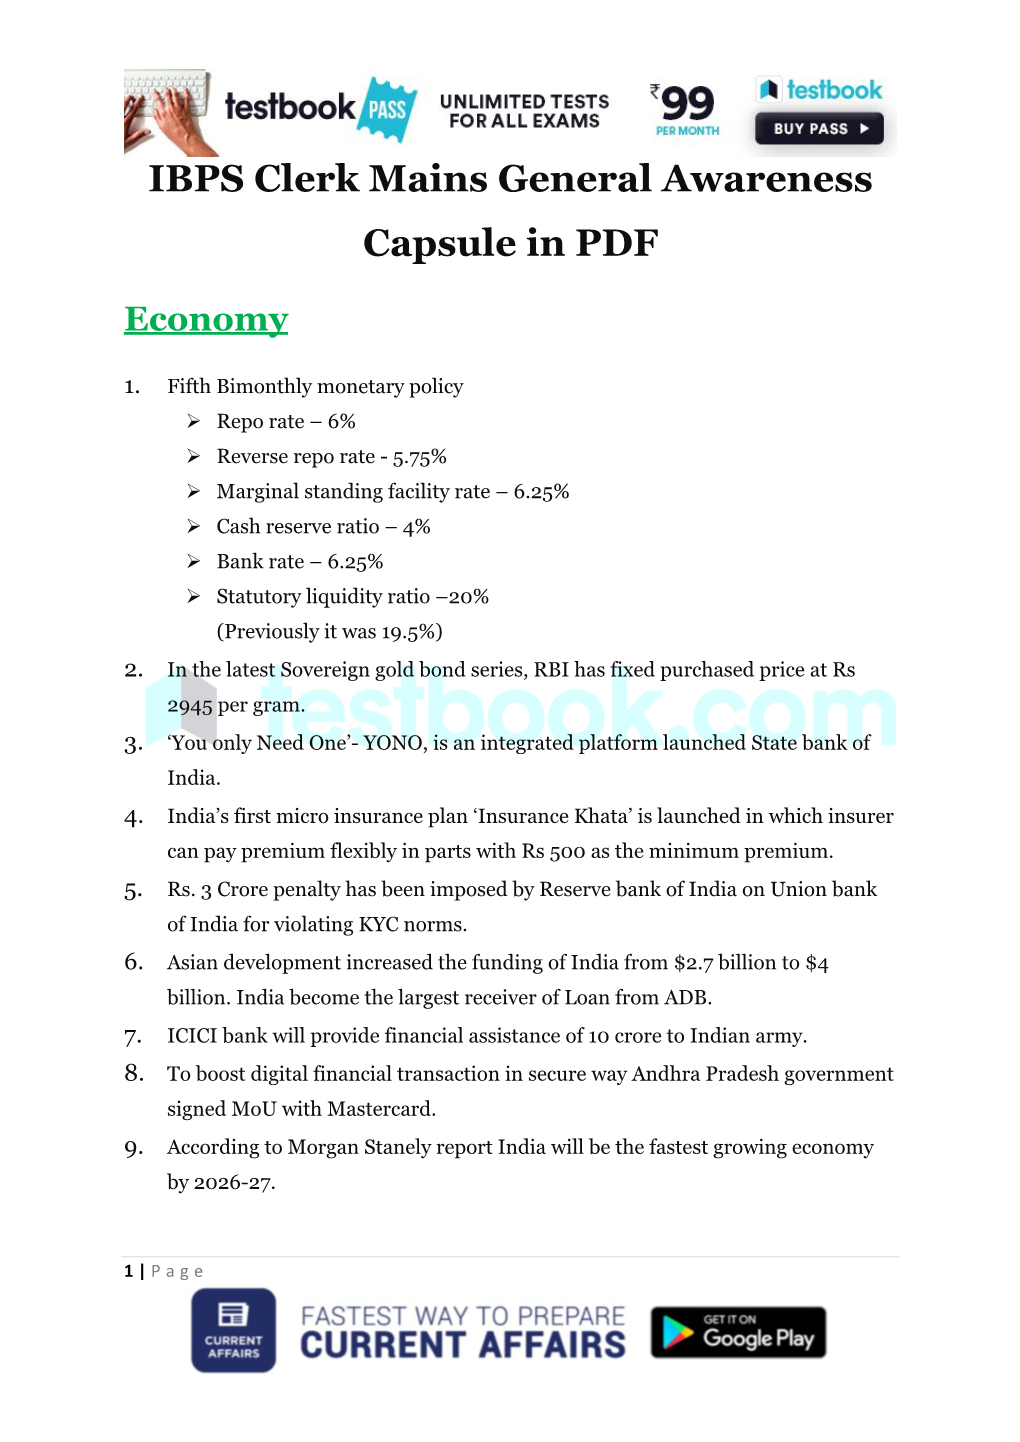 IBPS Clerk Mains General Awareness Capsule in PDF